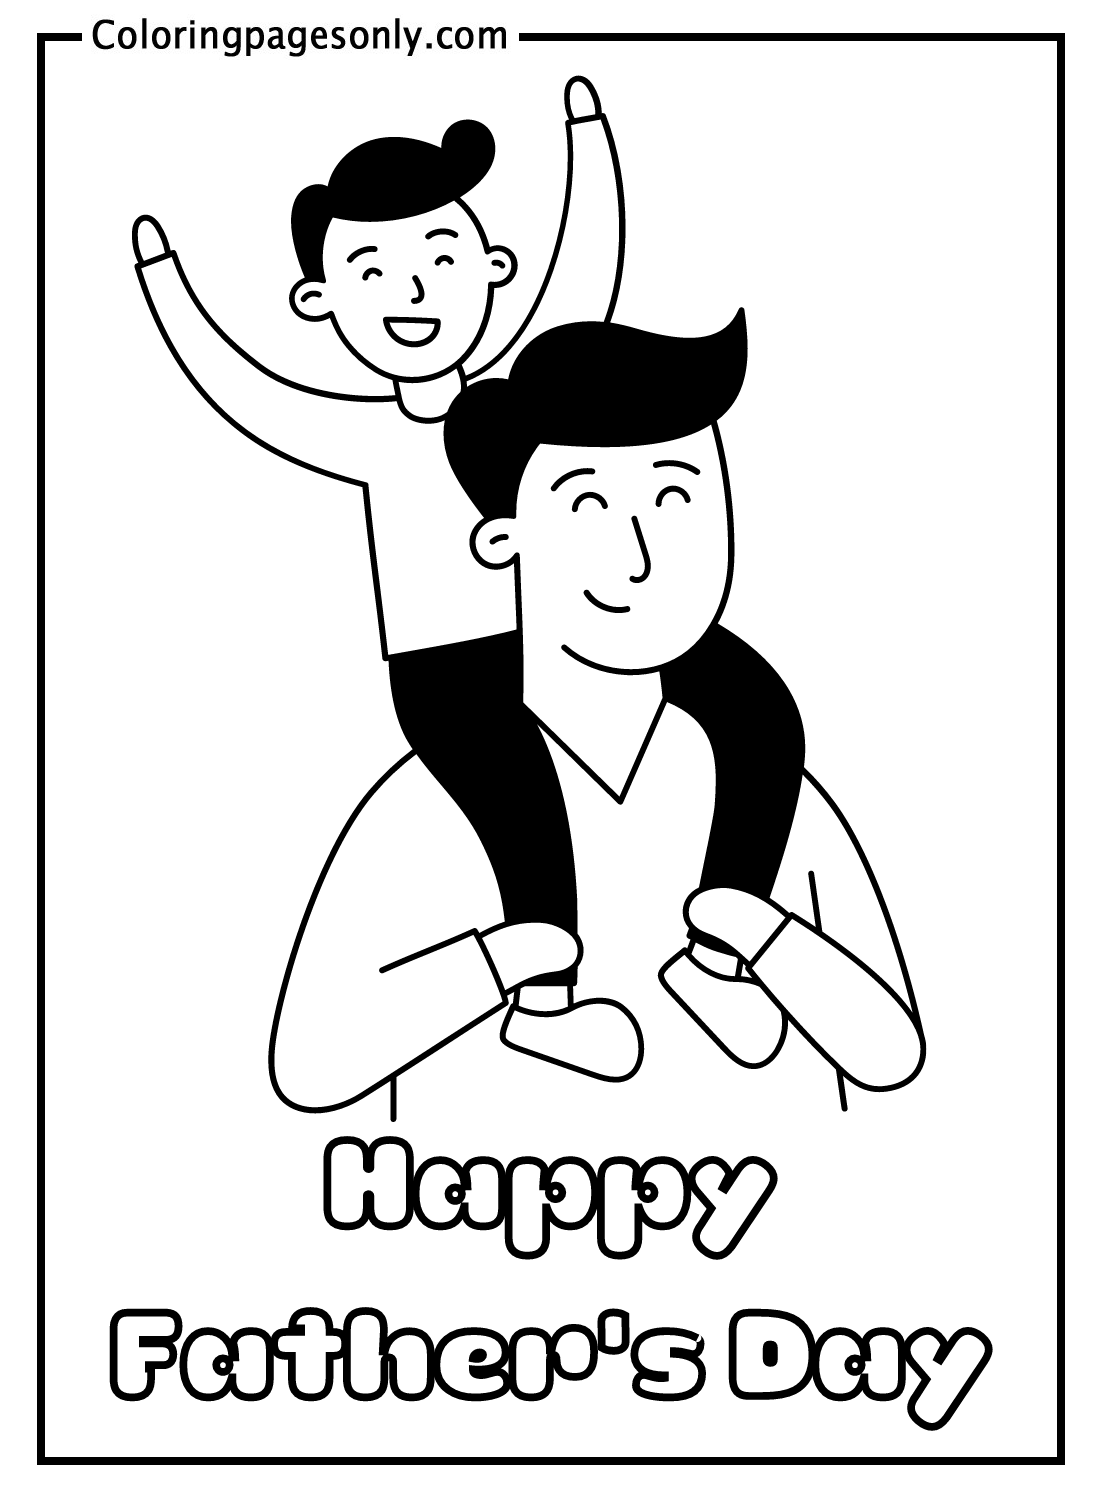 Feliz día del padre: páginas para colorear de papá e hijo - Páginas para  colorear del día del padre - Páginas para colorear para niños y adultos